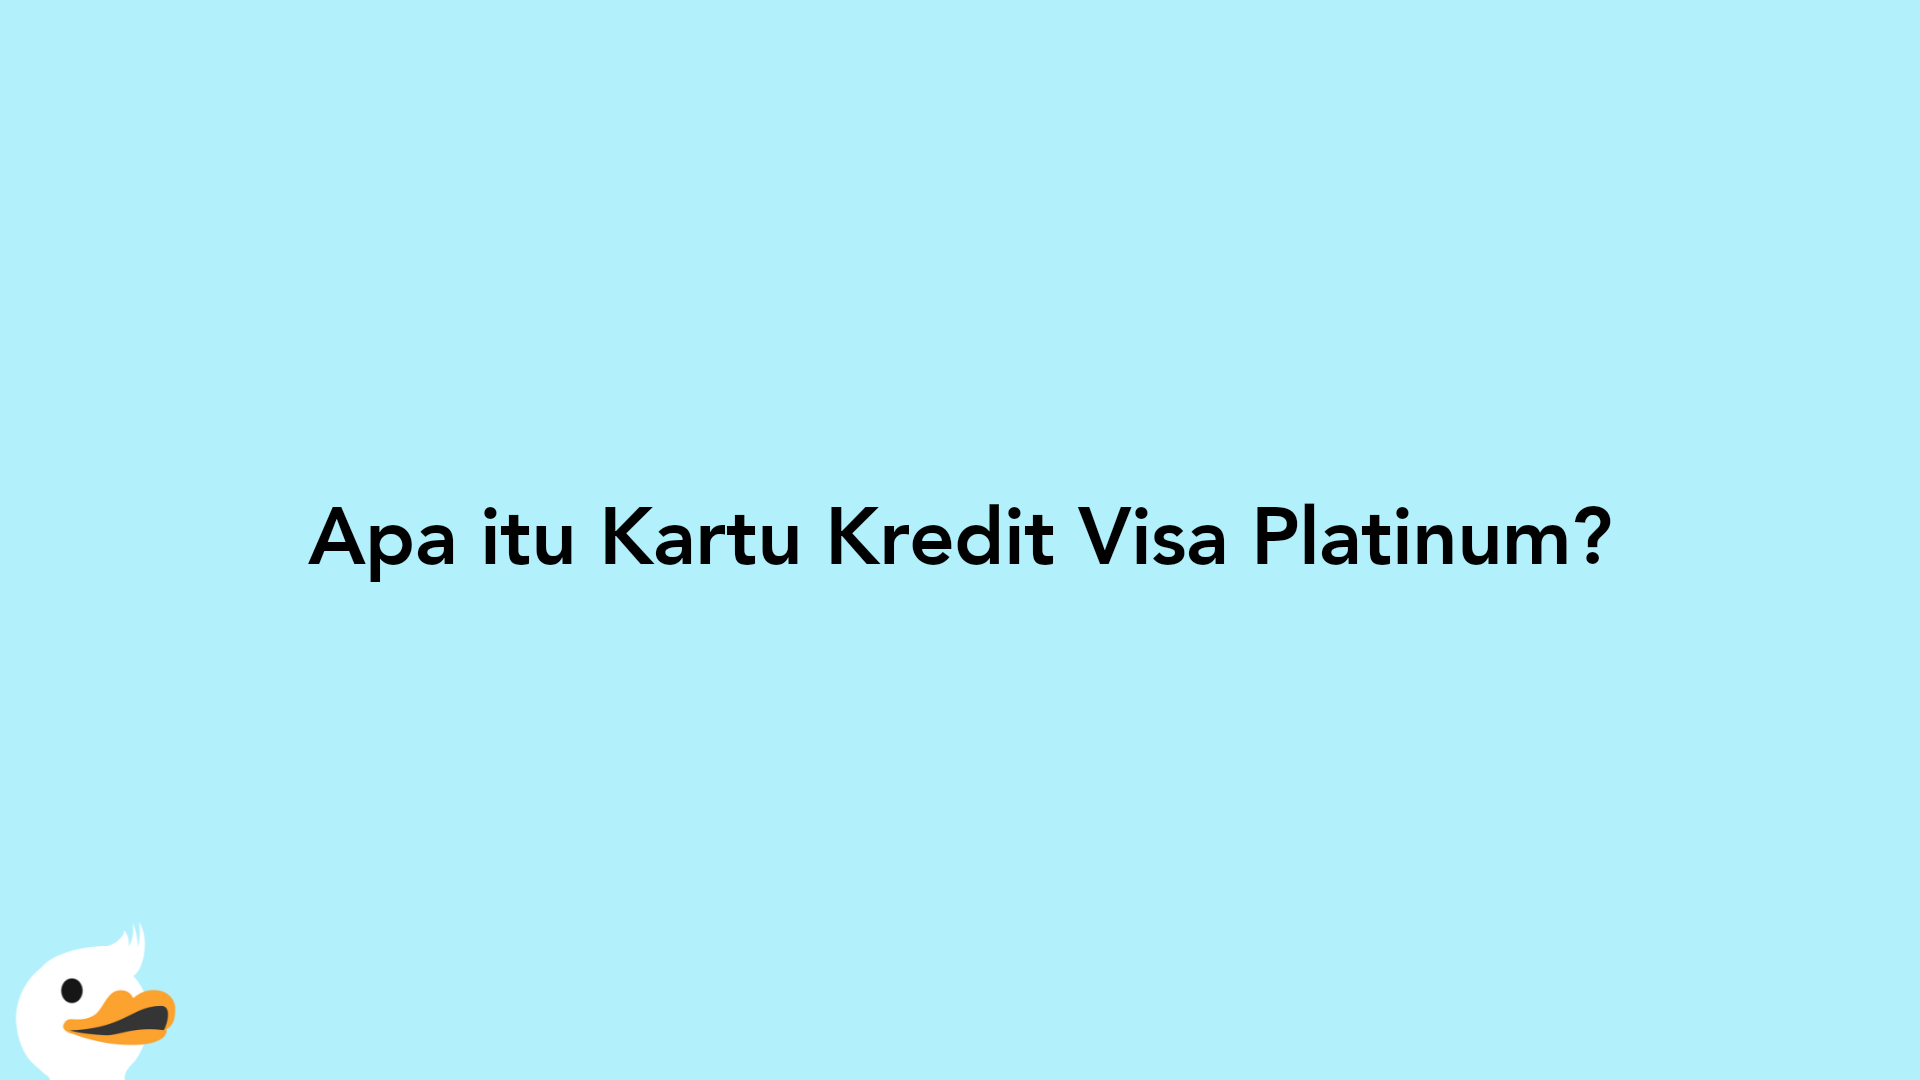 Apa itu Kartu Kredit Visa Platinum?